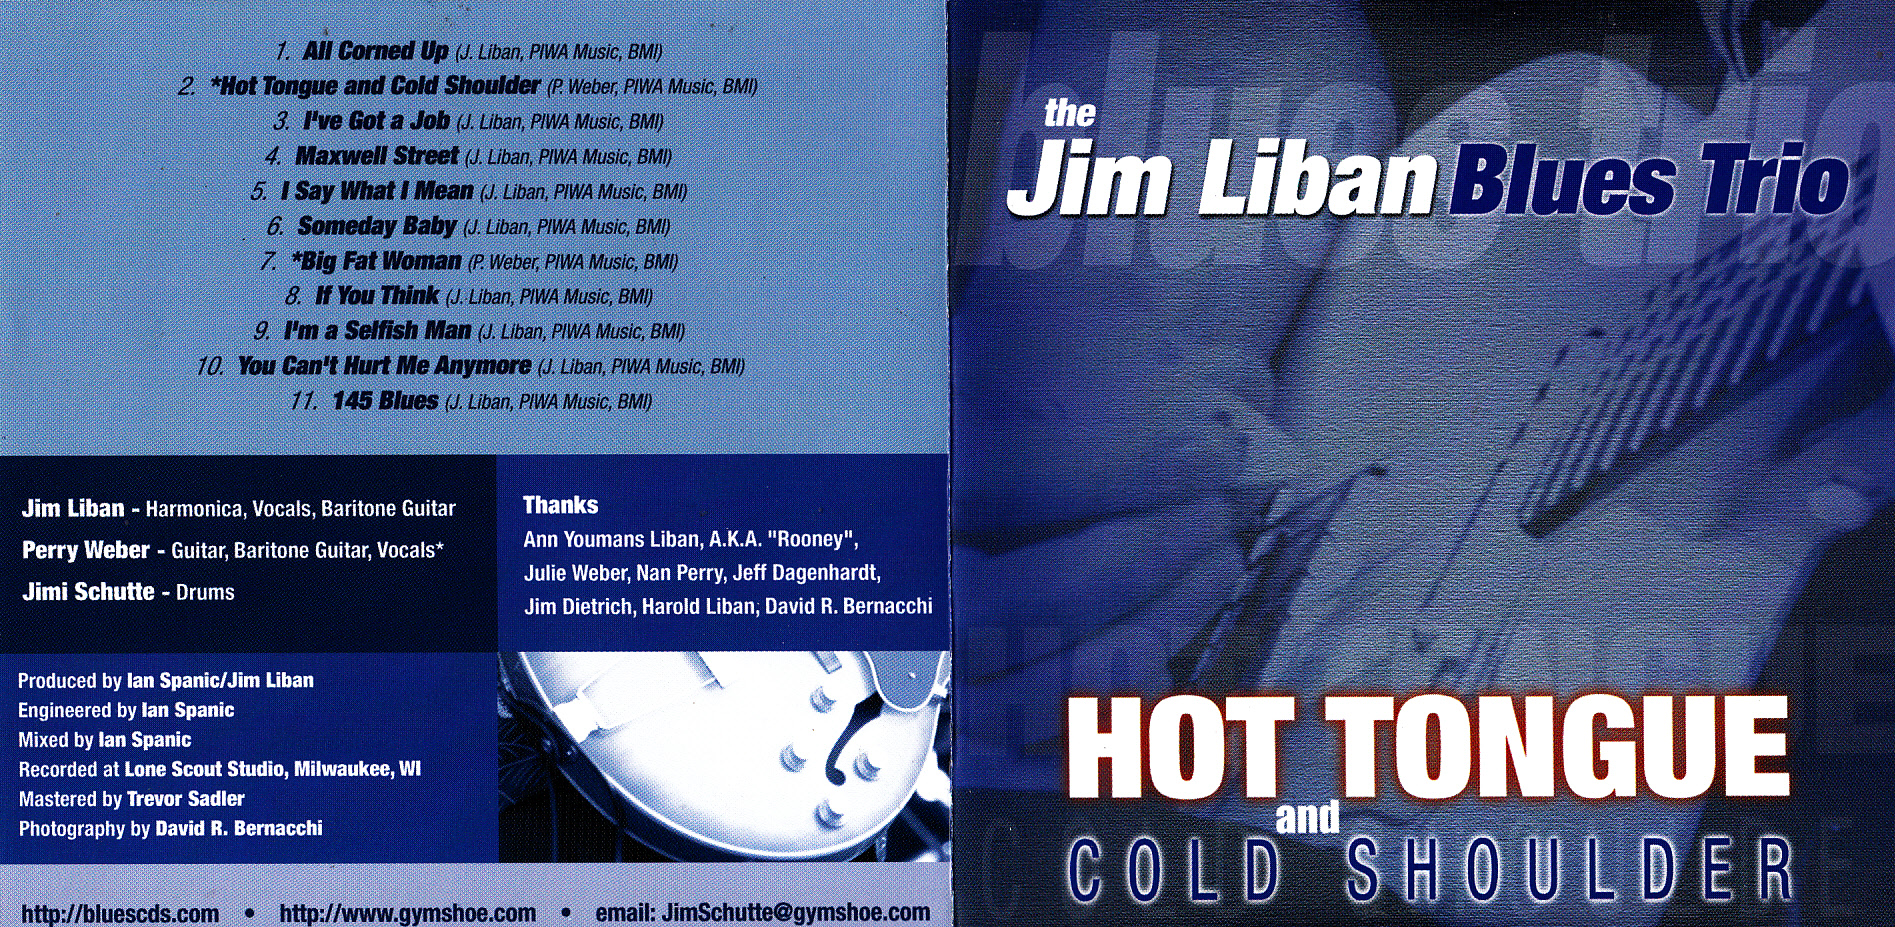 Jim Liban Blues Trio - Hot Tongue And Cold Shoulder